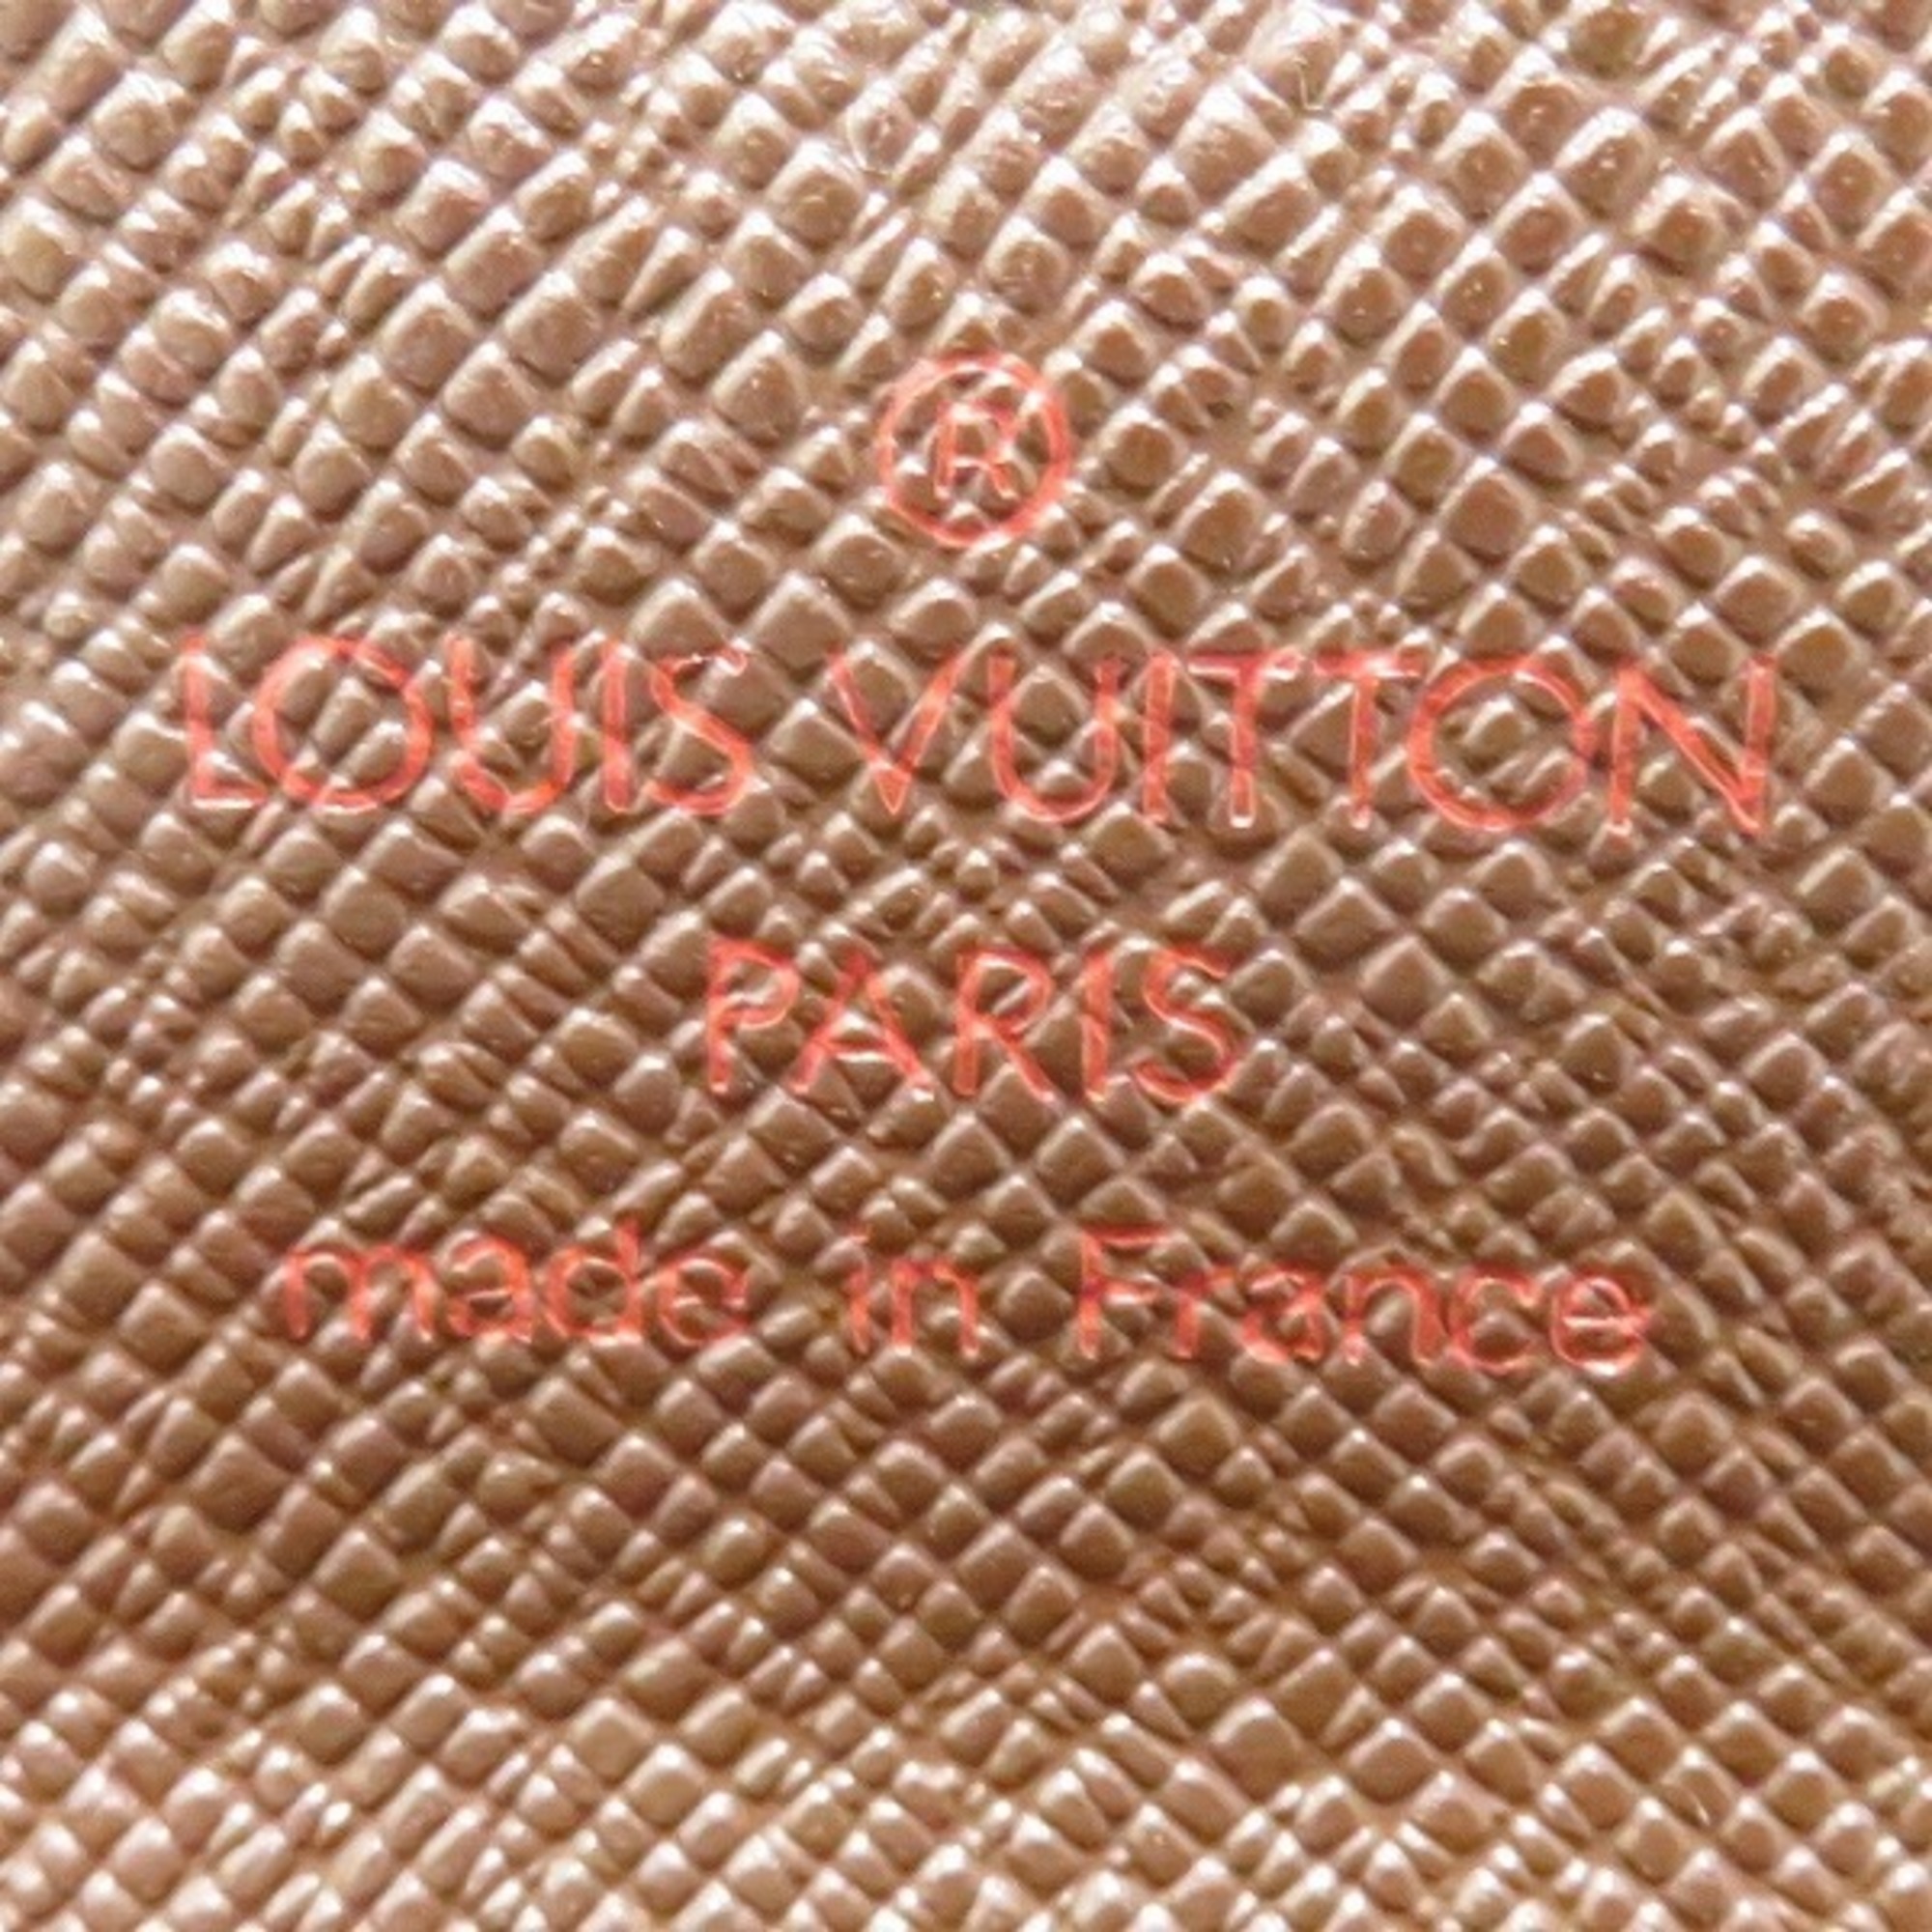 Louis Vuitton Damier Portomone Pla N61930 Wallet Coin Case Unisex Accessory